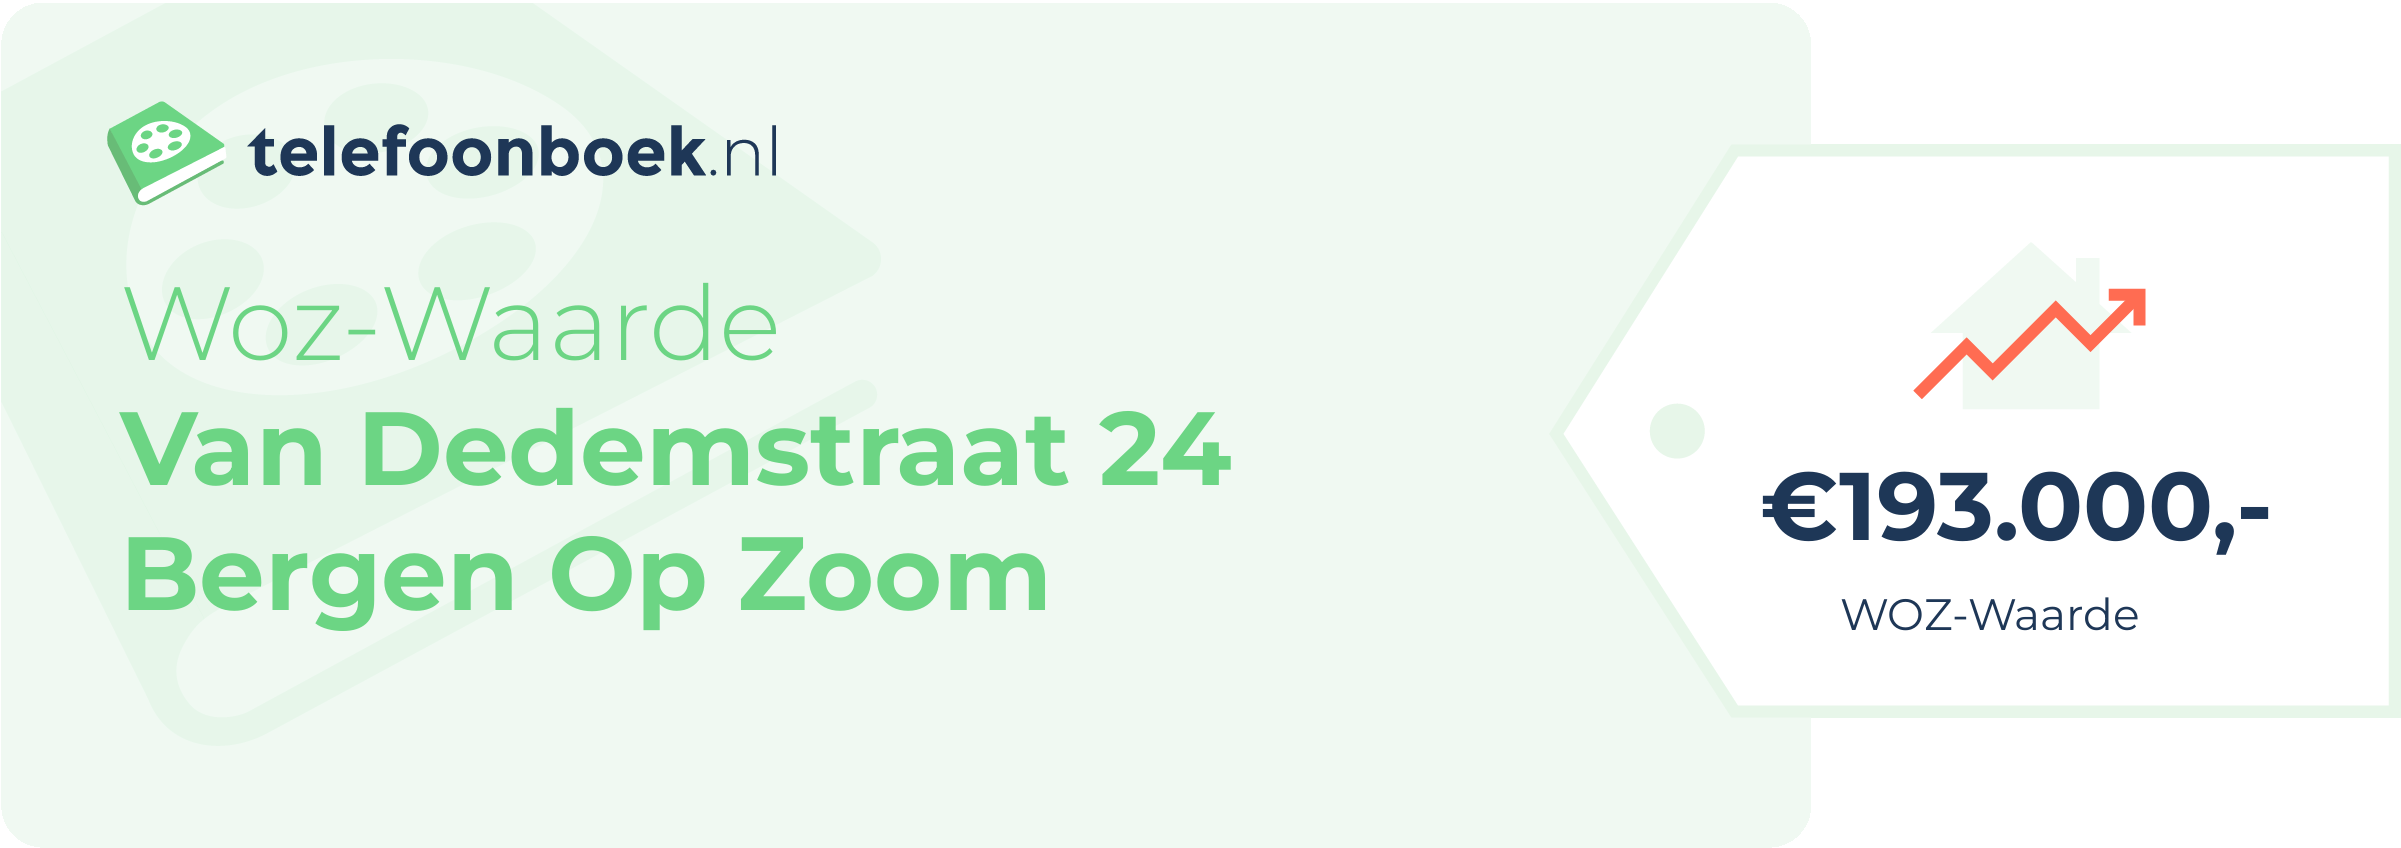 WOZ-waarde Van Dedemstraat 24 Bergen Op Zoom